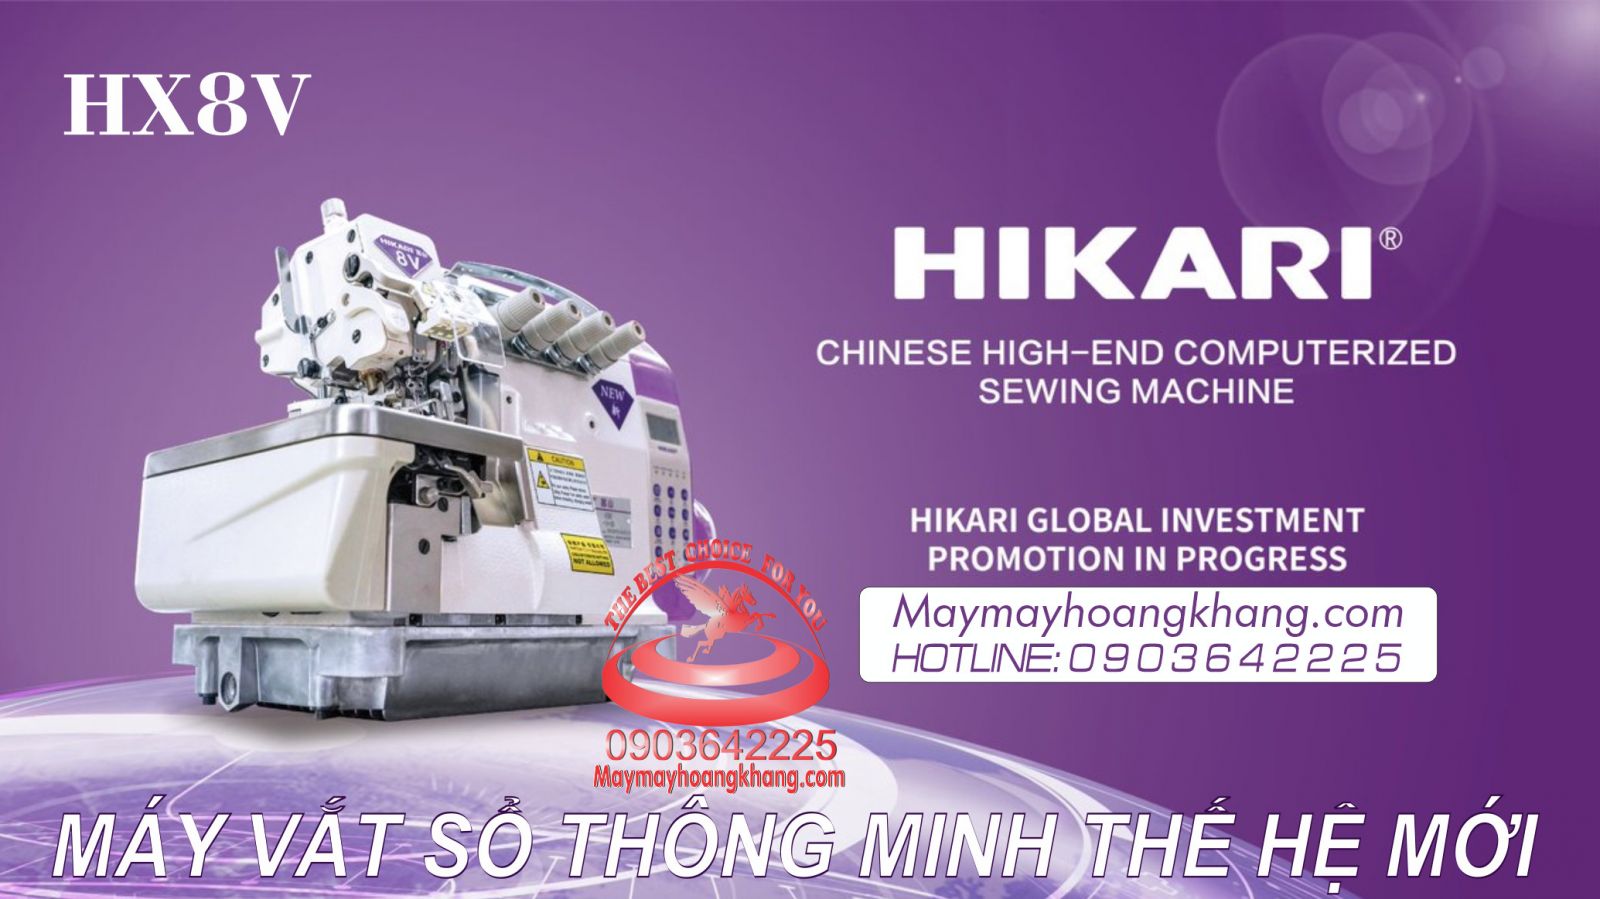 HIKARI HX8V-14-03